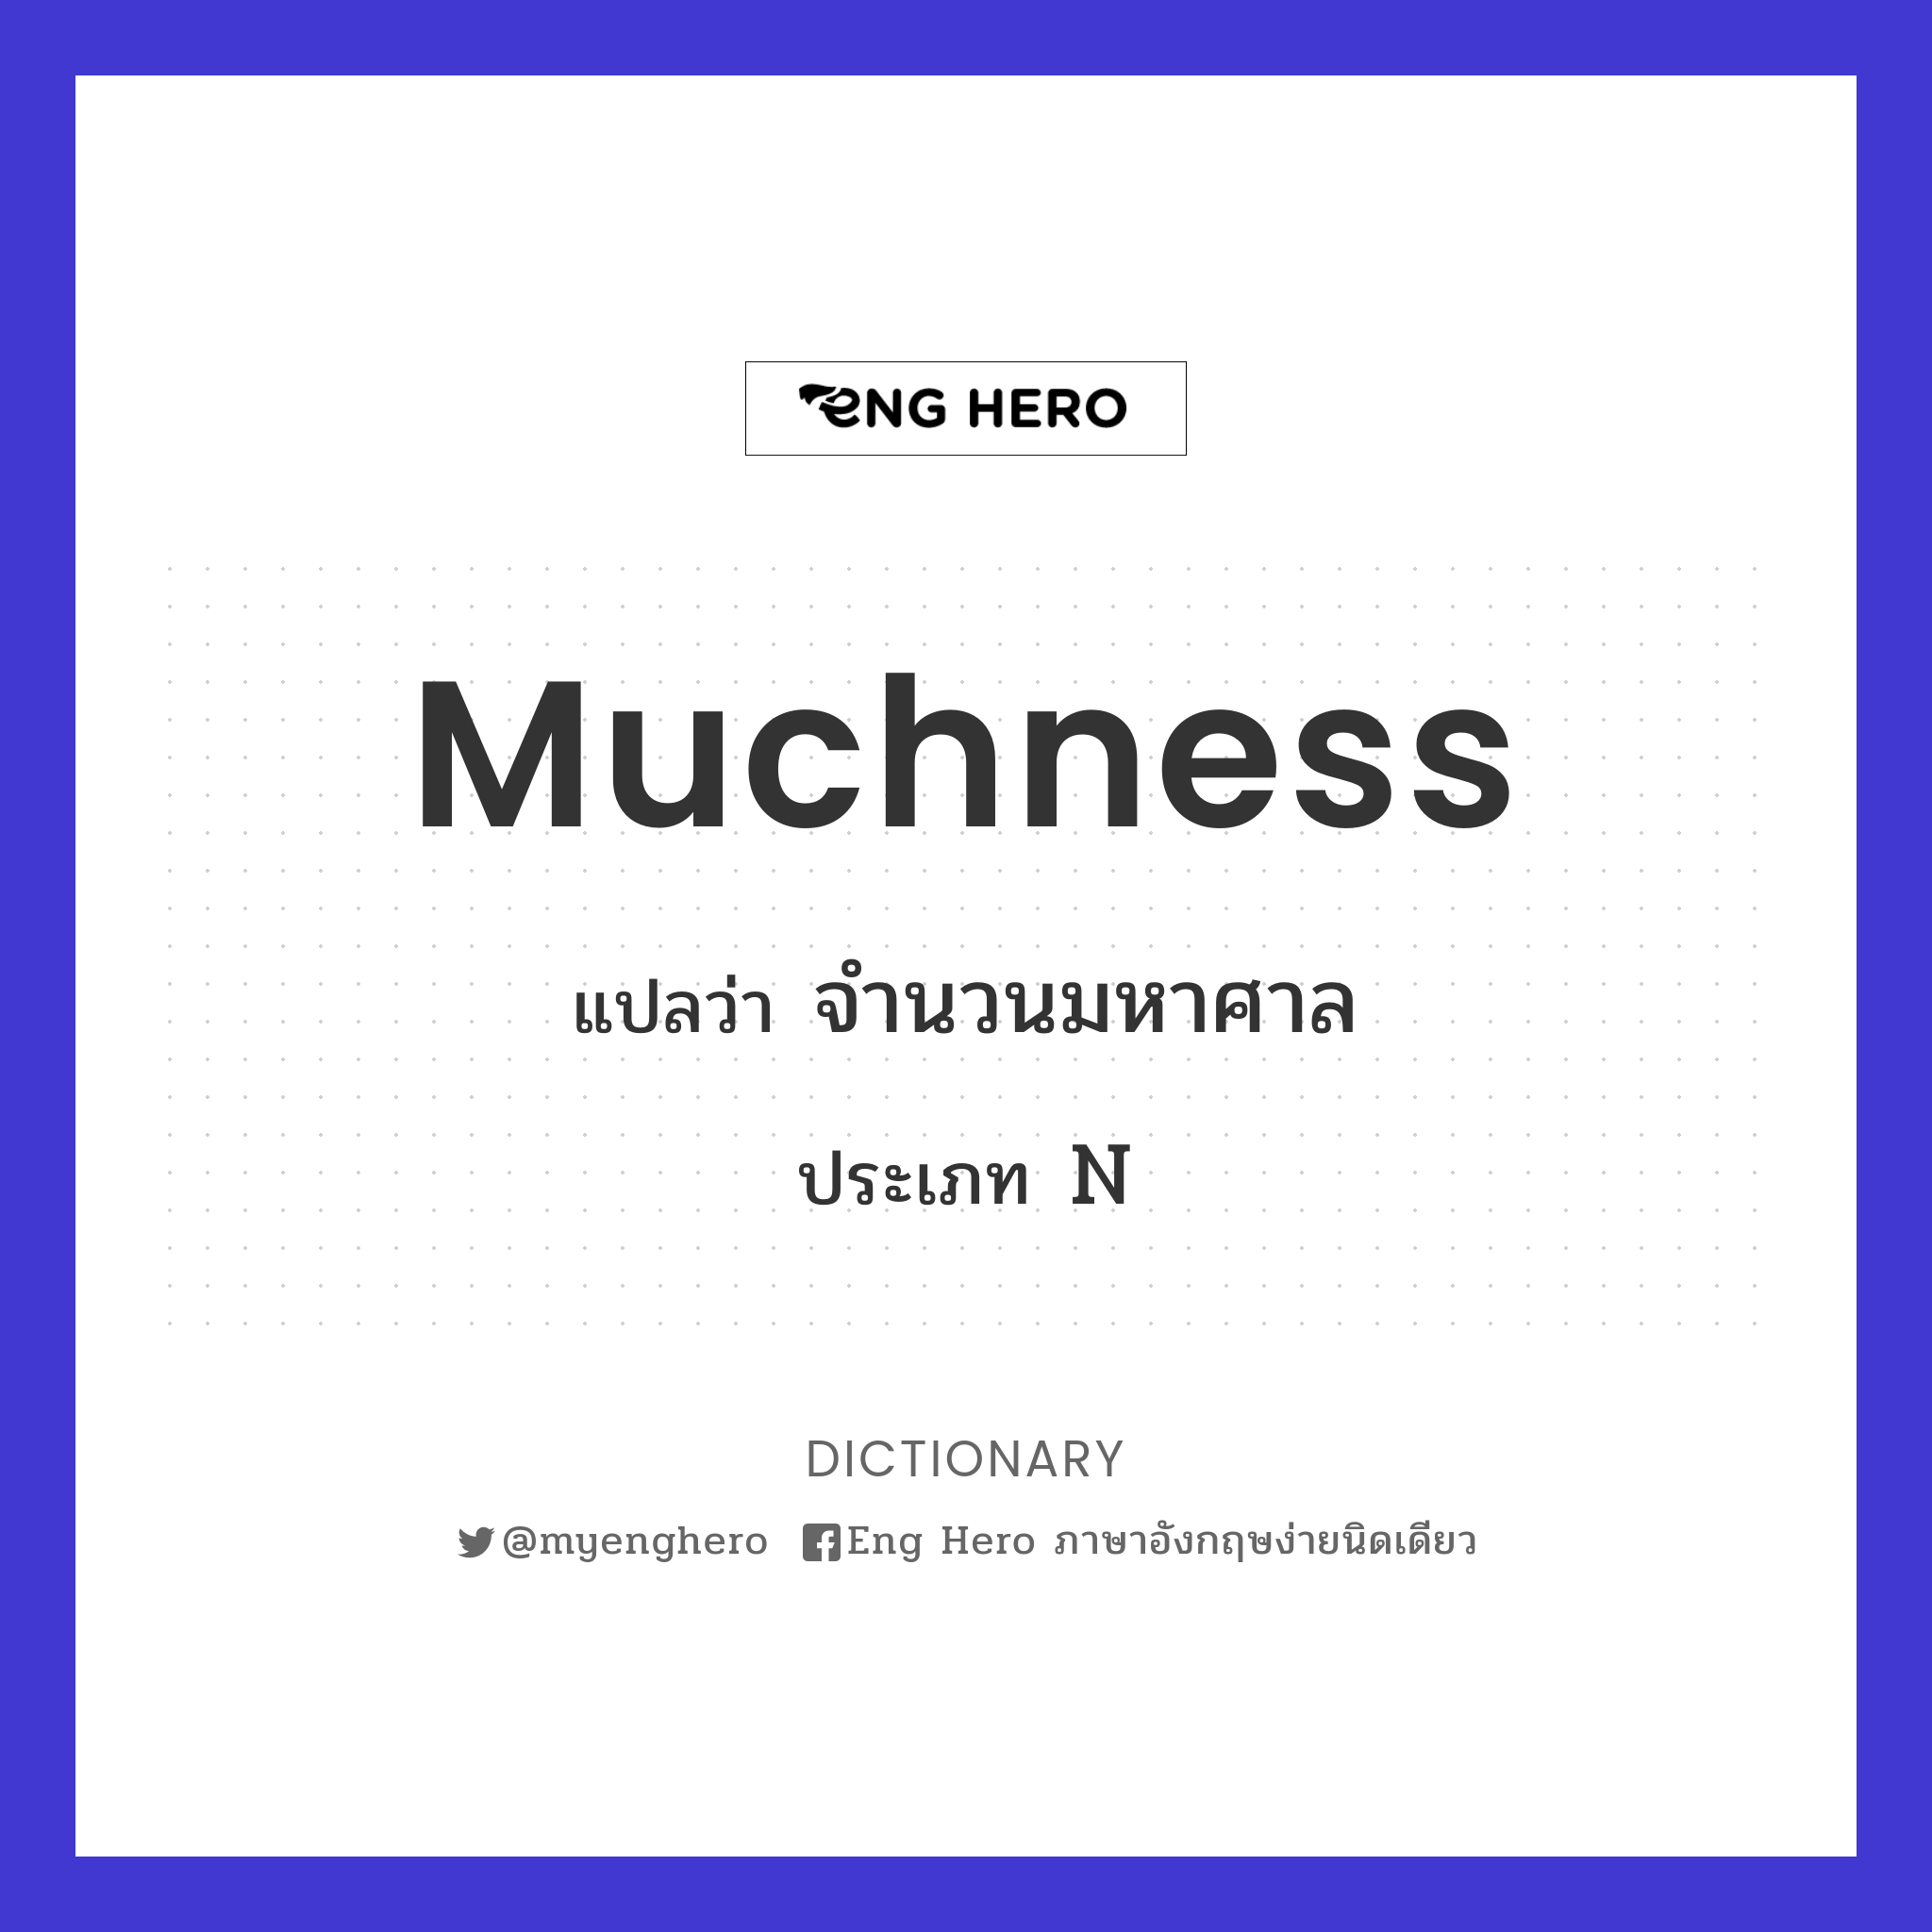 muchness